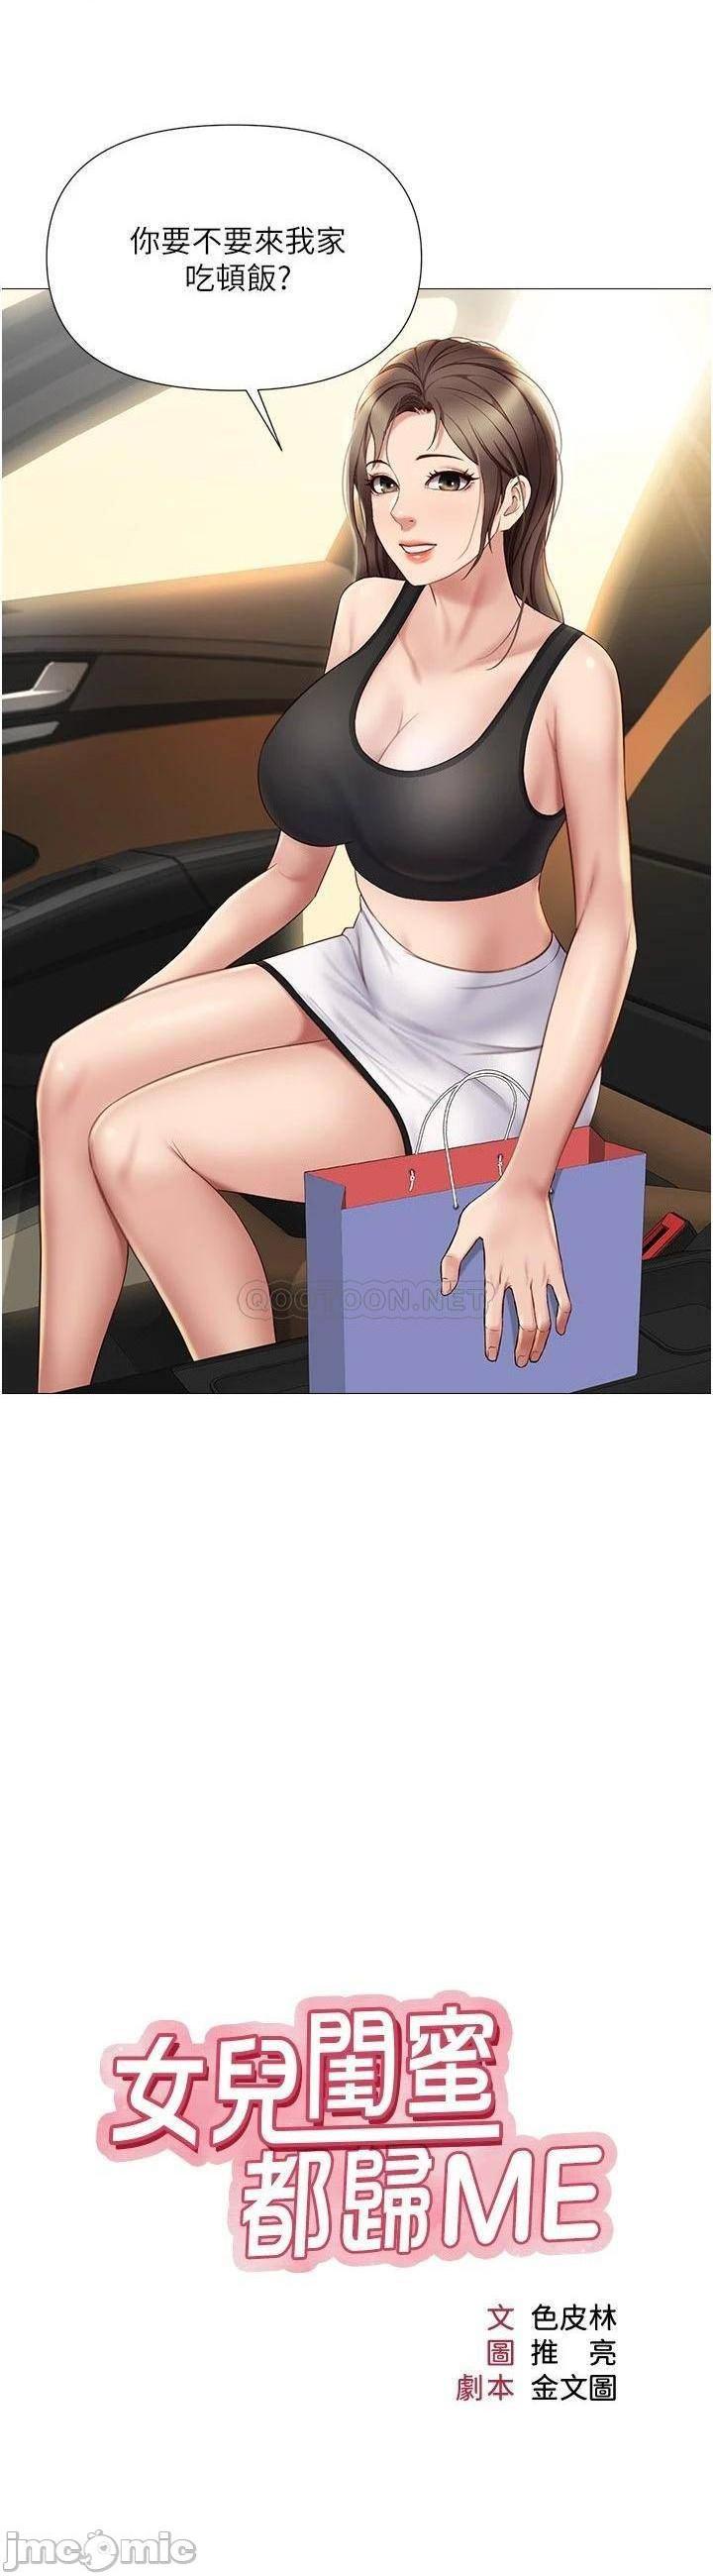 《女儿闺蜜都归ME》漫画 第22话 镂空内衣透出的性感身躯